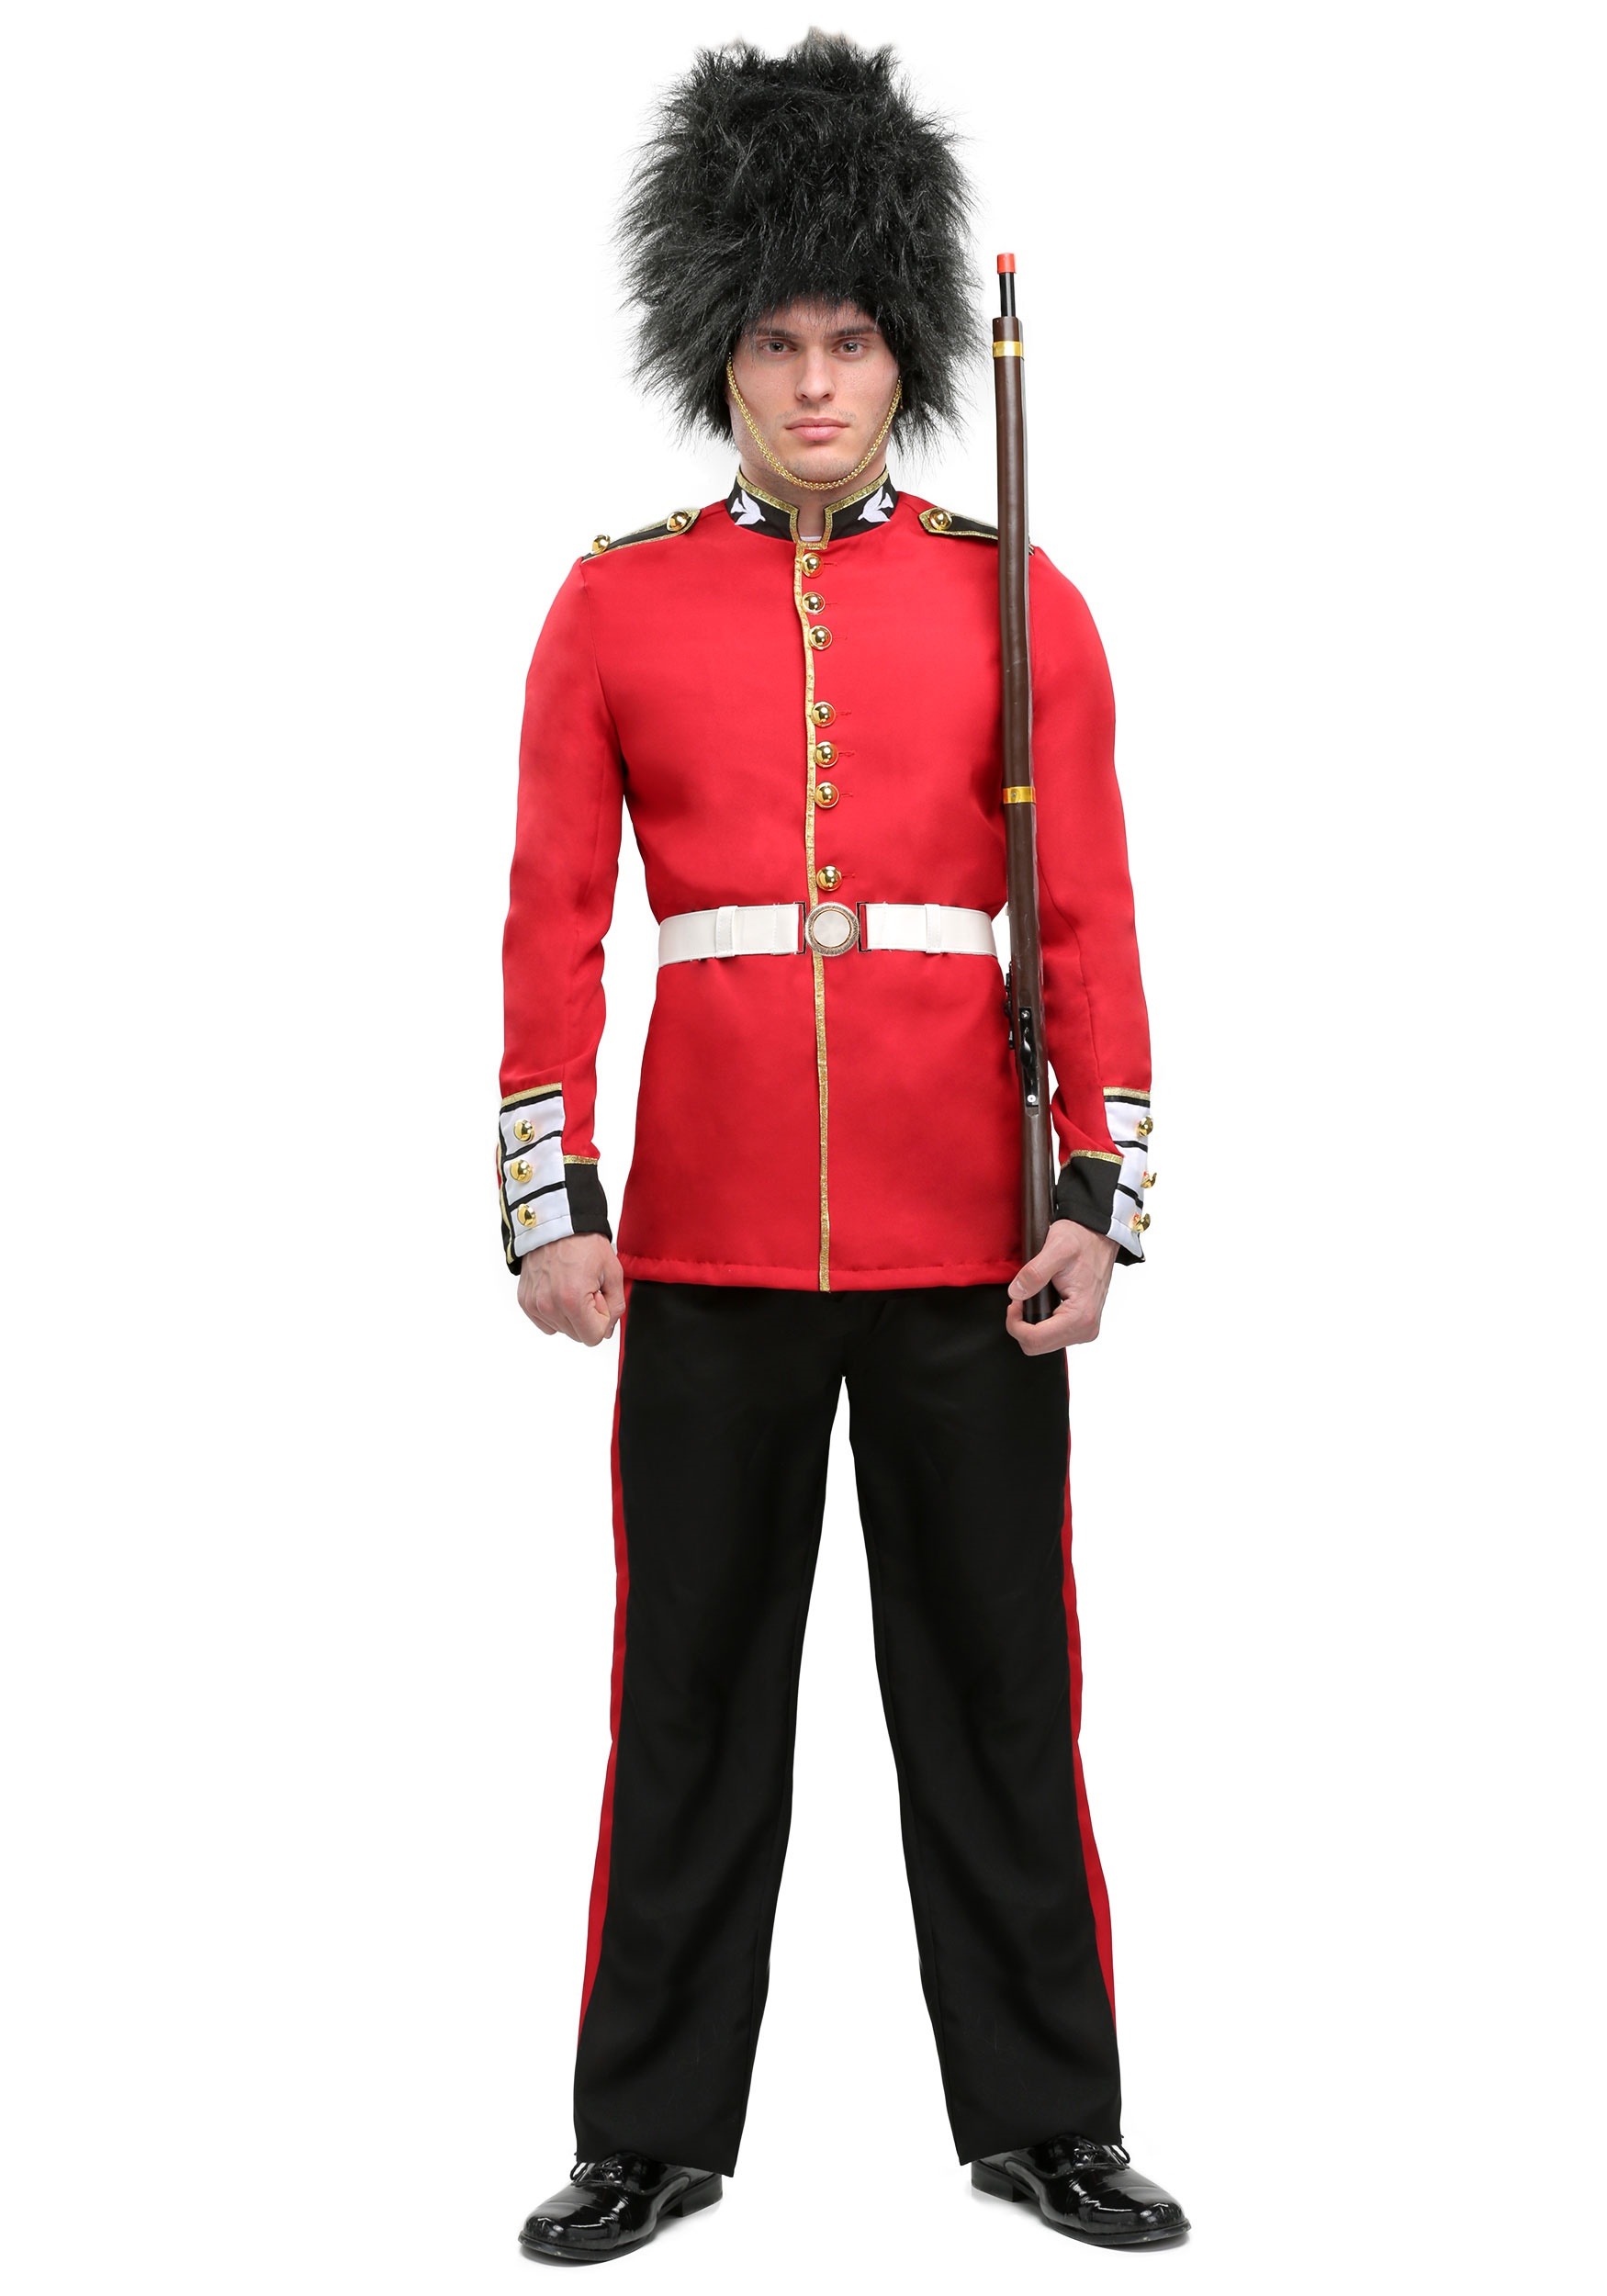 Men’s Royal Guard Costume